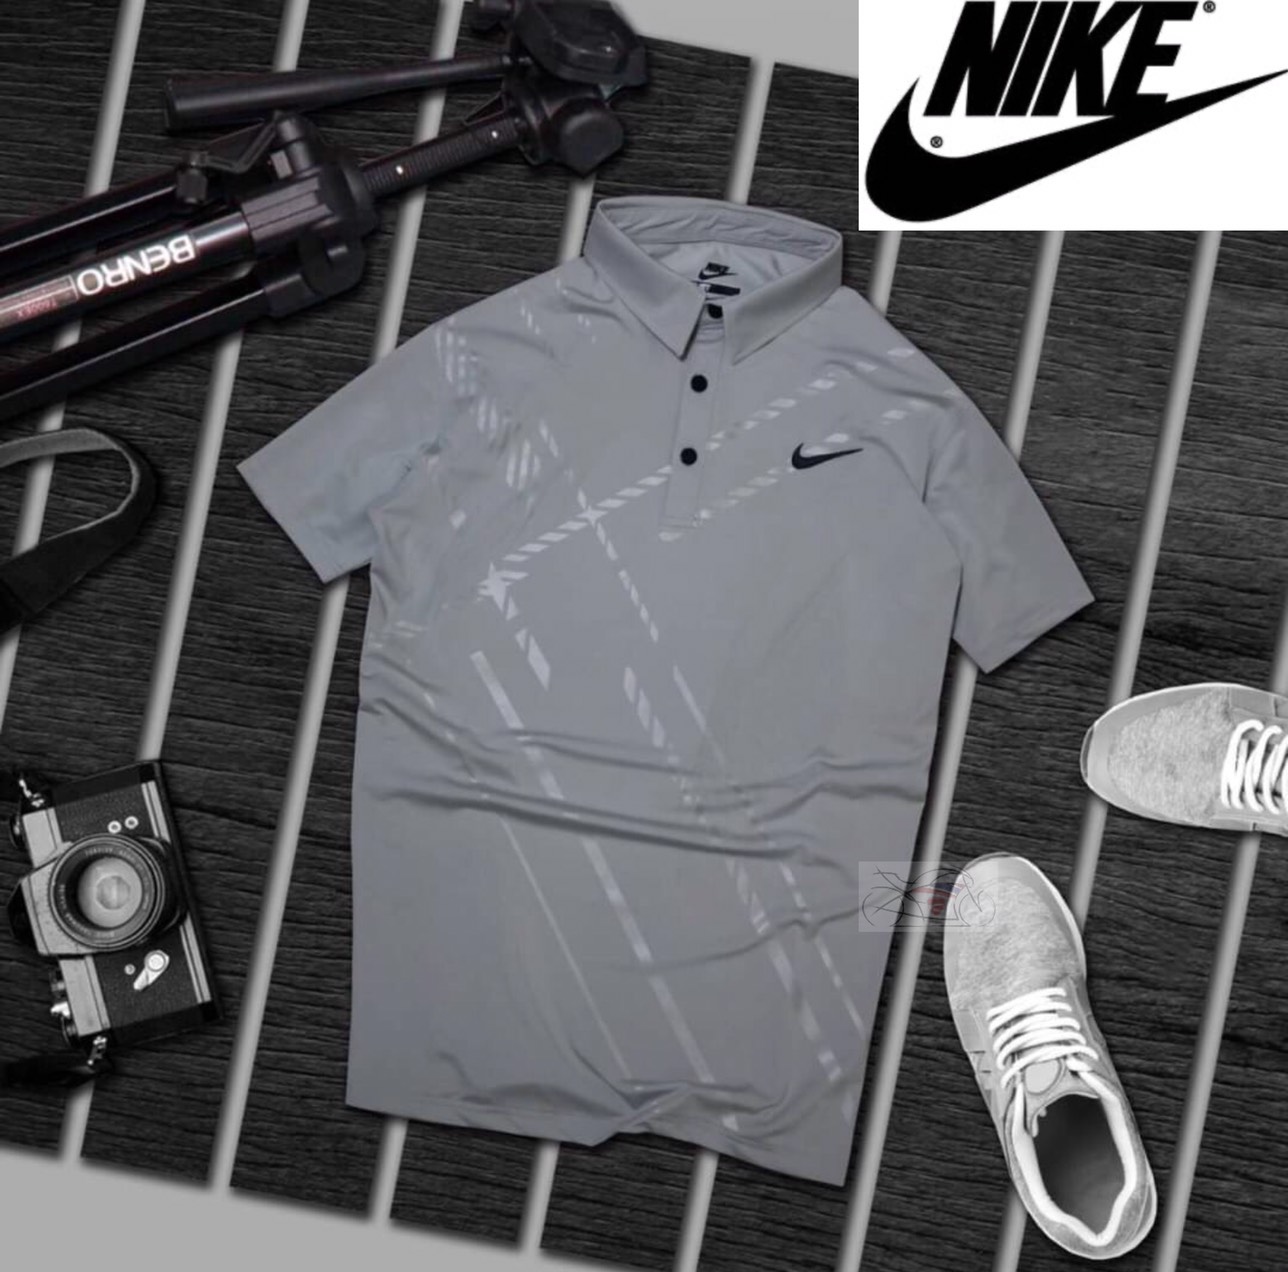 Nikesเสื้อโปโลไนกี เสื้อกีฬาโปโล เสื้อคอปก เสื้อโปโลกีฬาชาย เสื้อโปโลกีฬาแขนสั้น เสื้อโปโลแขนสั้น เกรดพรีเมี่ยม AAA+